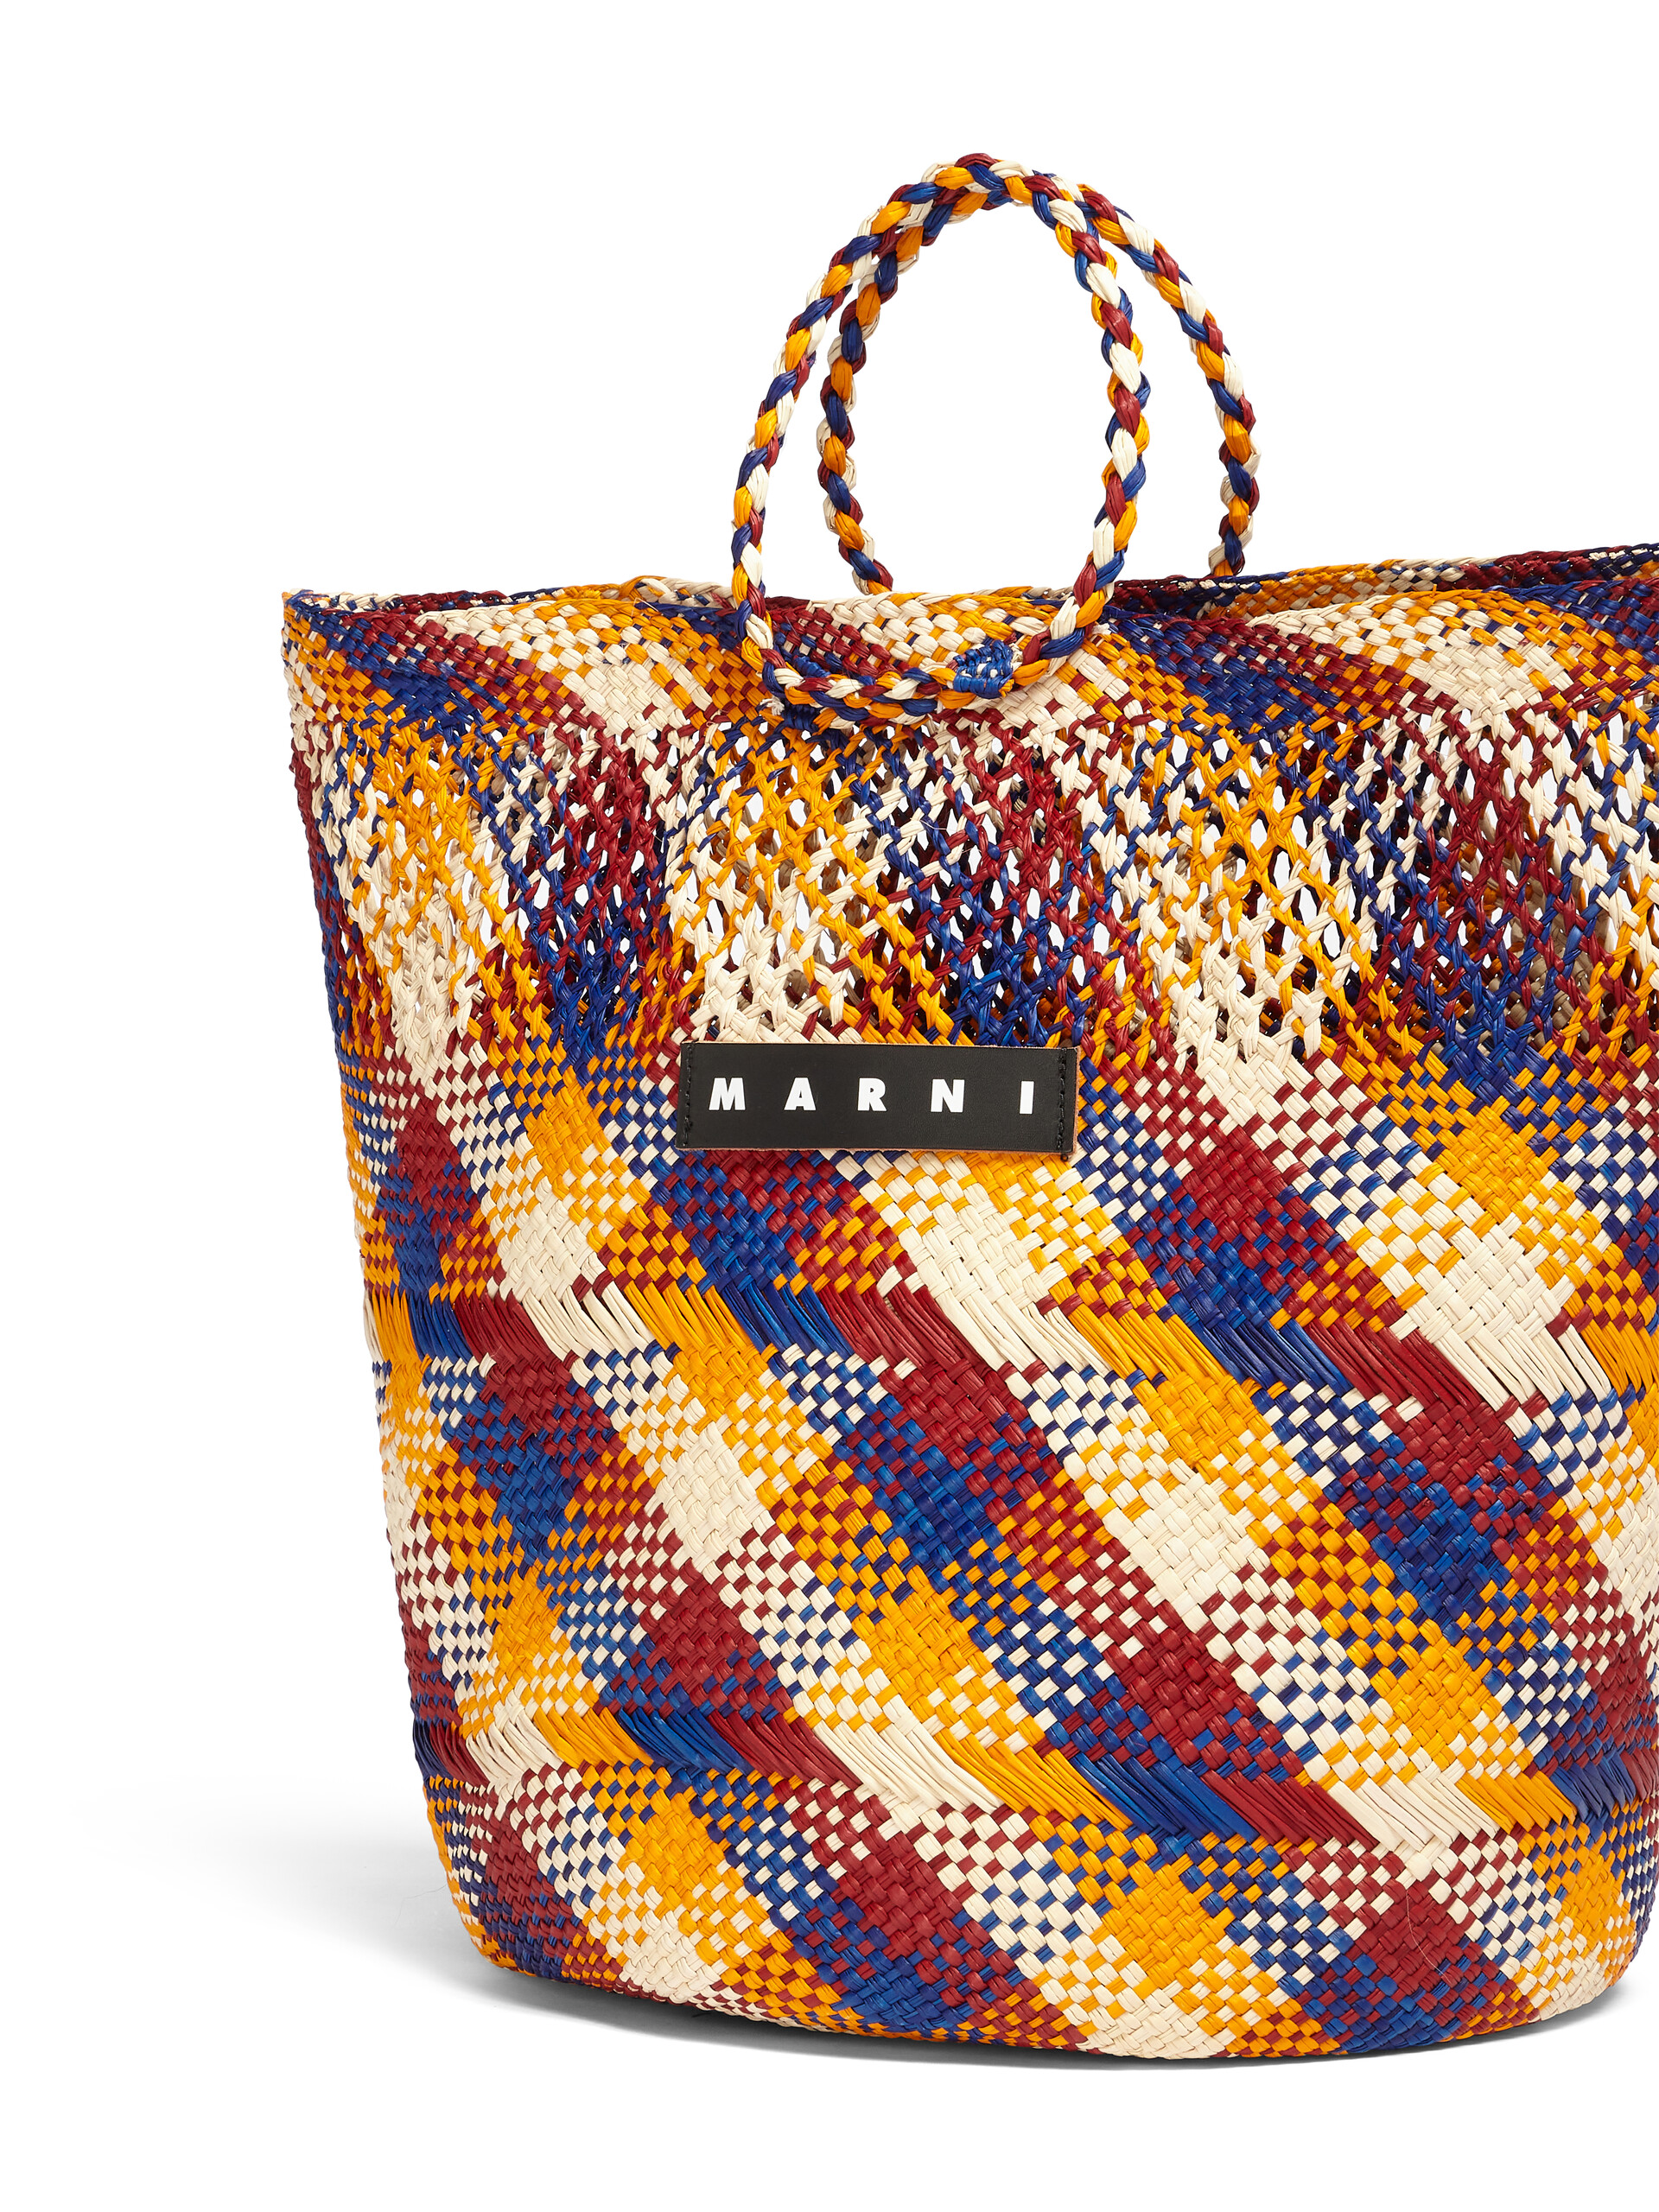 MARNI MARKET TAPIS bag in multicolor natural fiber - Bags - Image 4